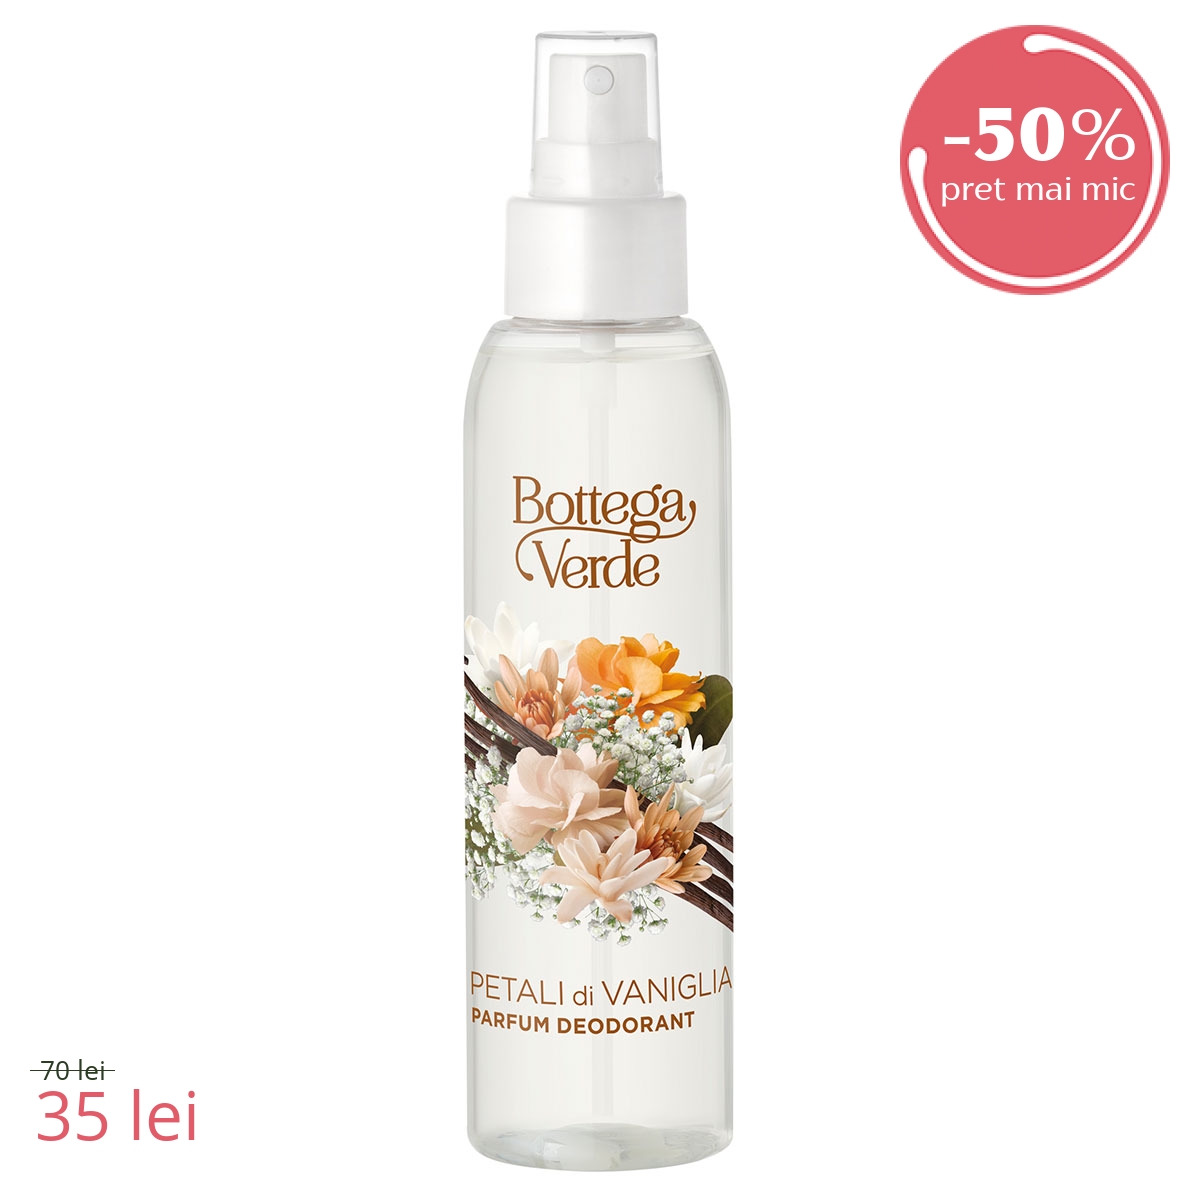 Parfum deodorant, delicat, cu aroma de vanilie - Petali di Vaniglia, 125 ML - Petali di Vaniglia, 125 ML